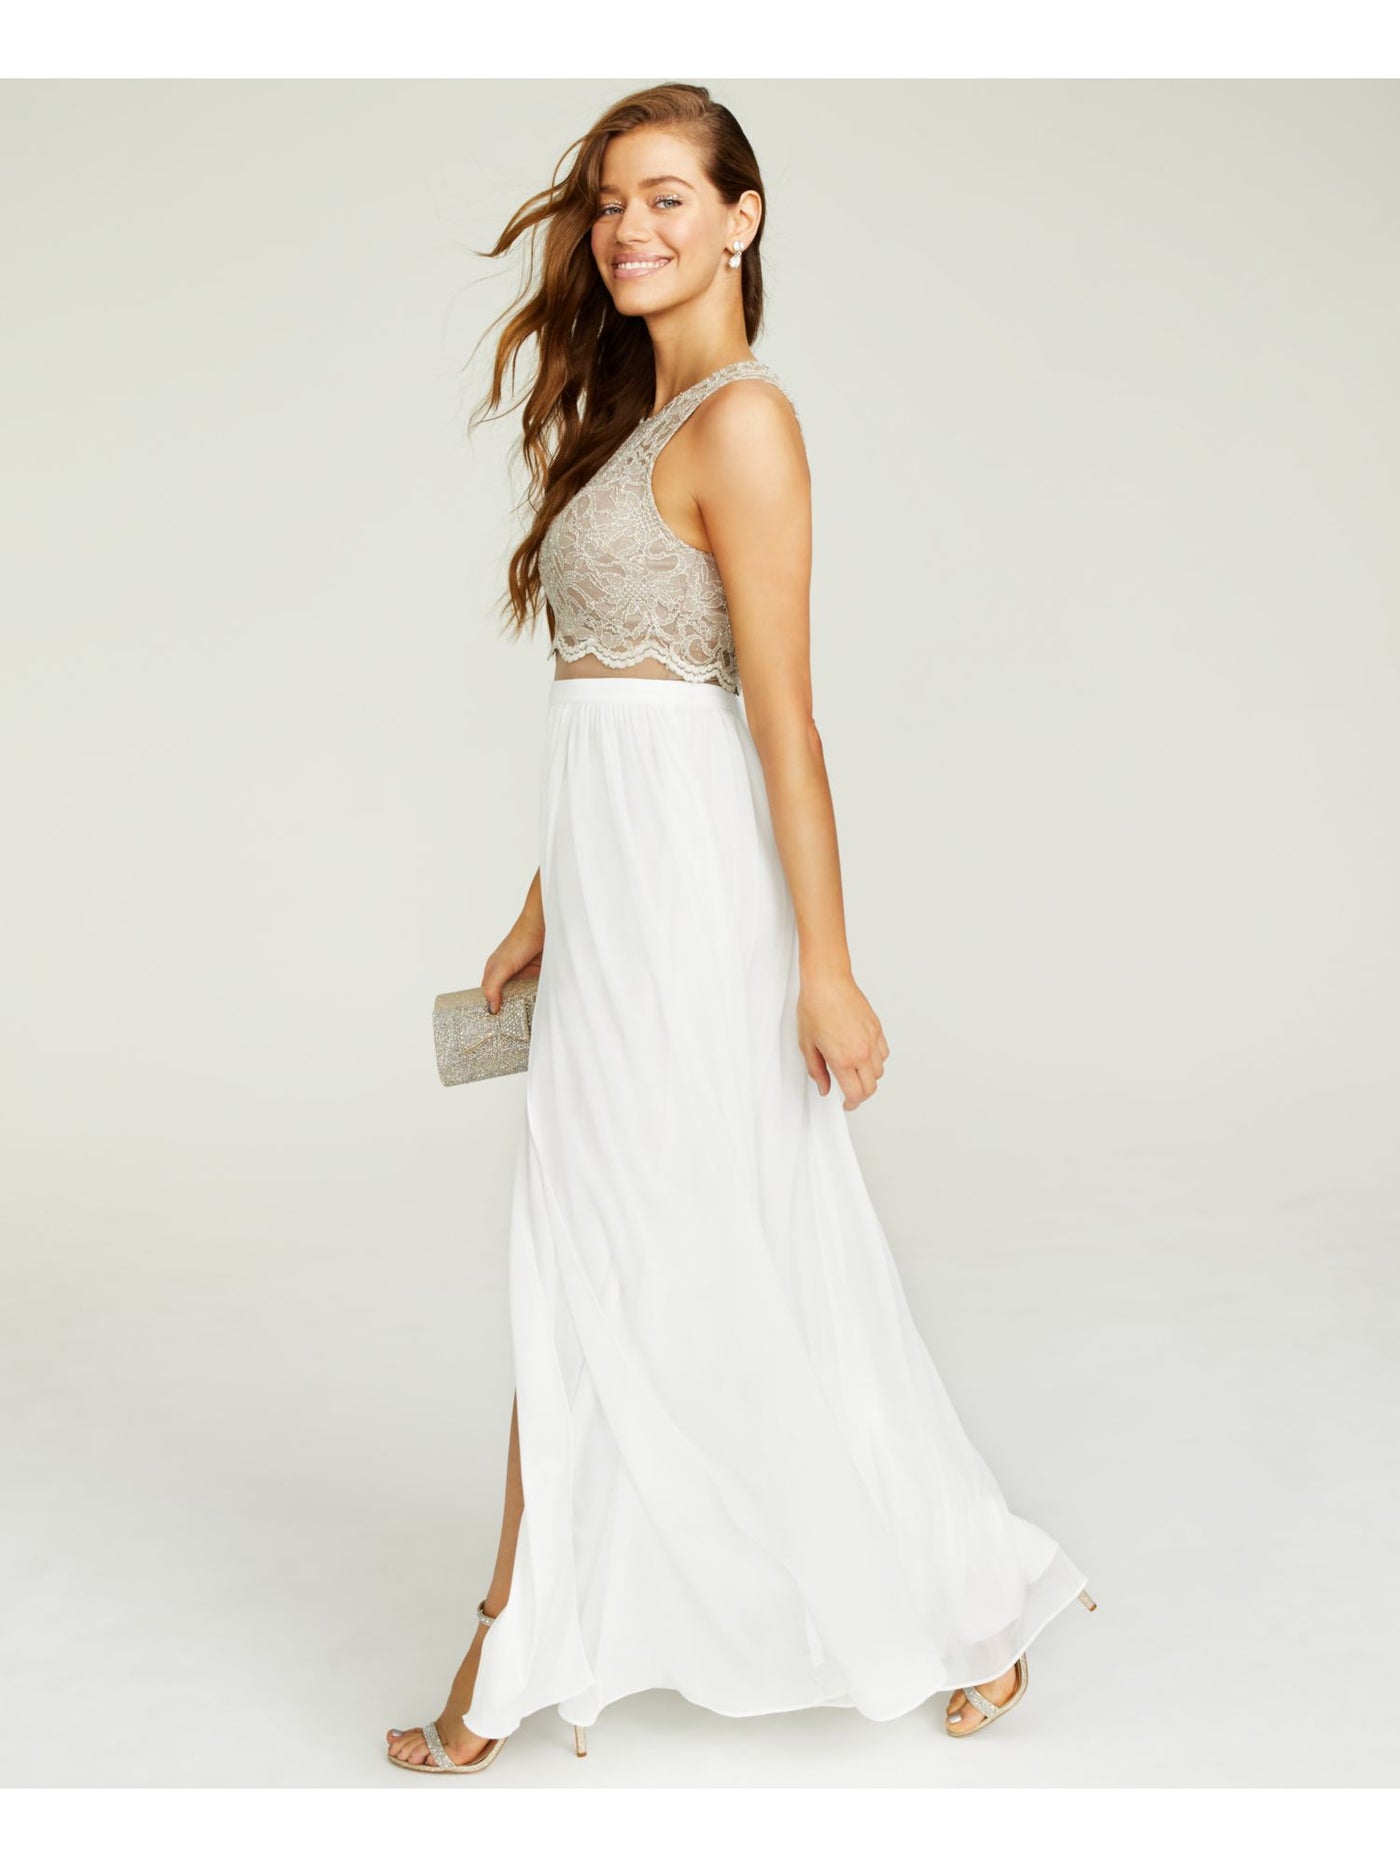 CITY STUDIO Womens Nylon Embroidered Sleeveless Halter Full-Length Prom Fit + Flare Dress